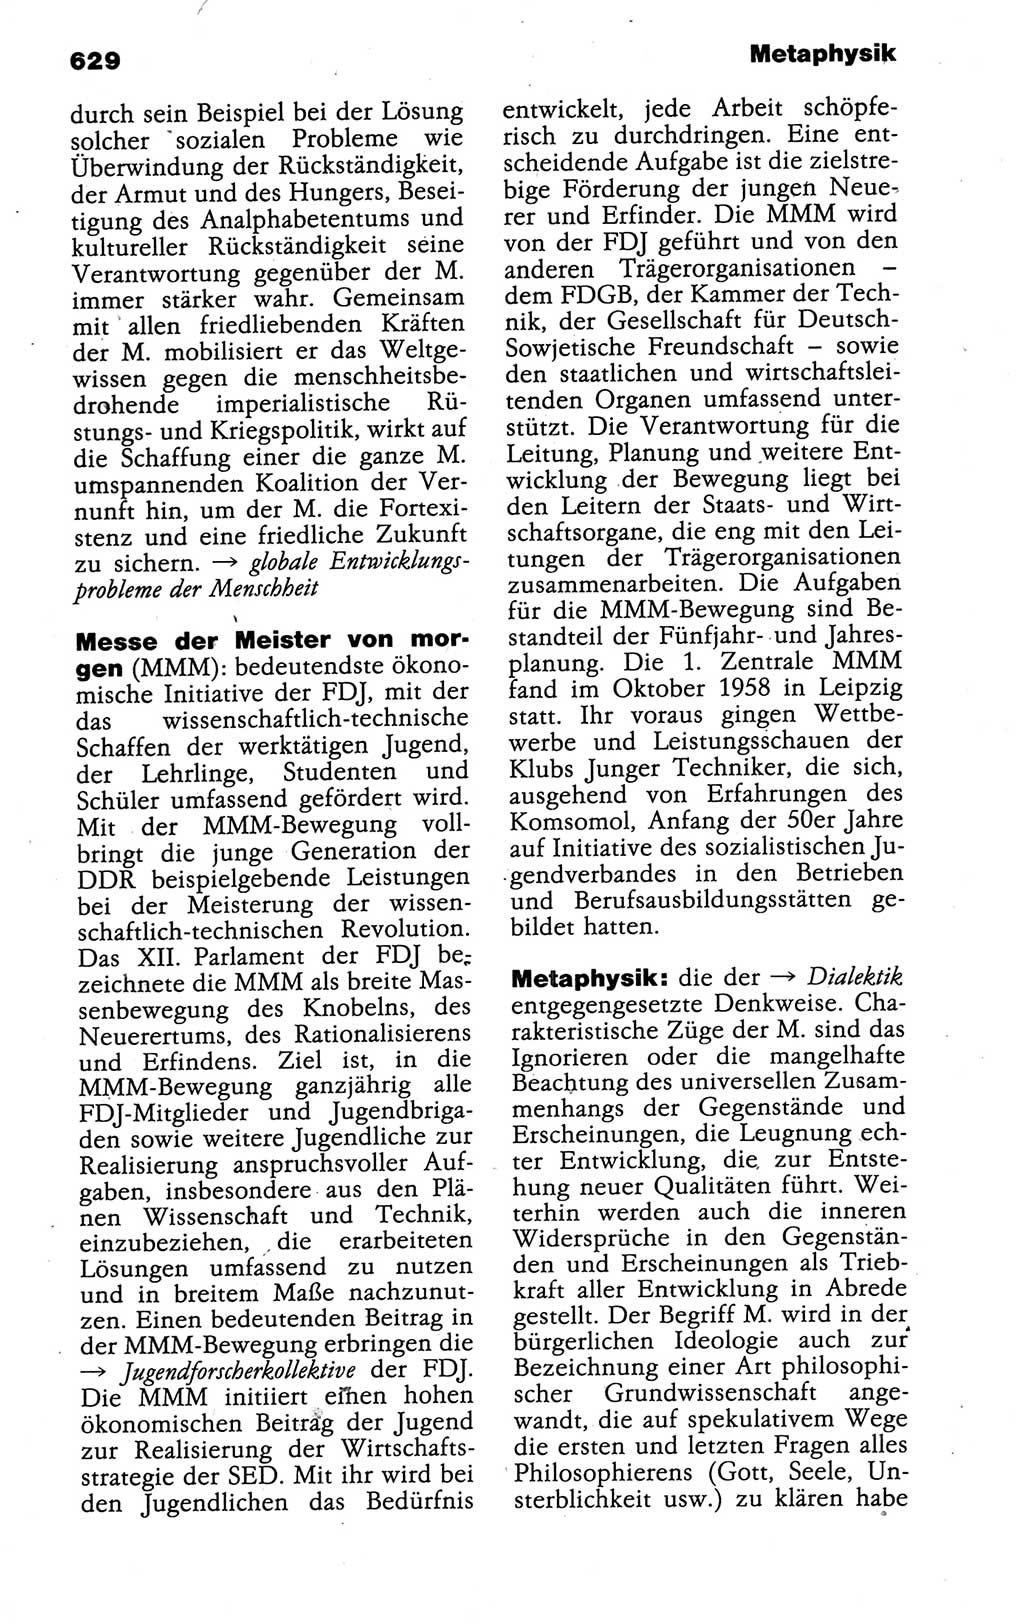 Kleines politisches Wörterbuch [Deutsche Demokratische Republik (DDR)] 1988, Seite 629 (Kl. pol. Wb. DDR 1988, S. 629)